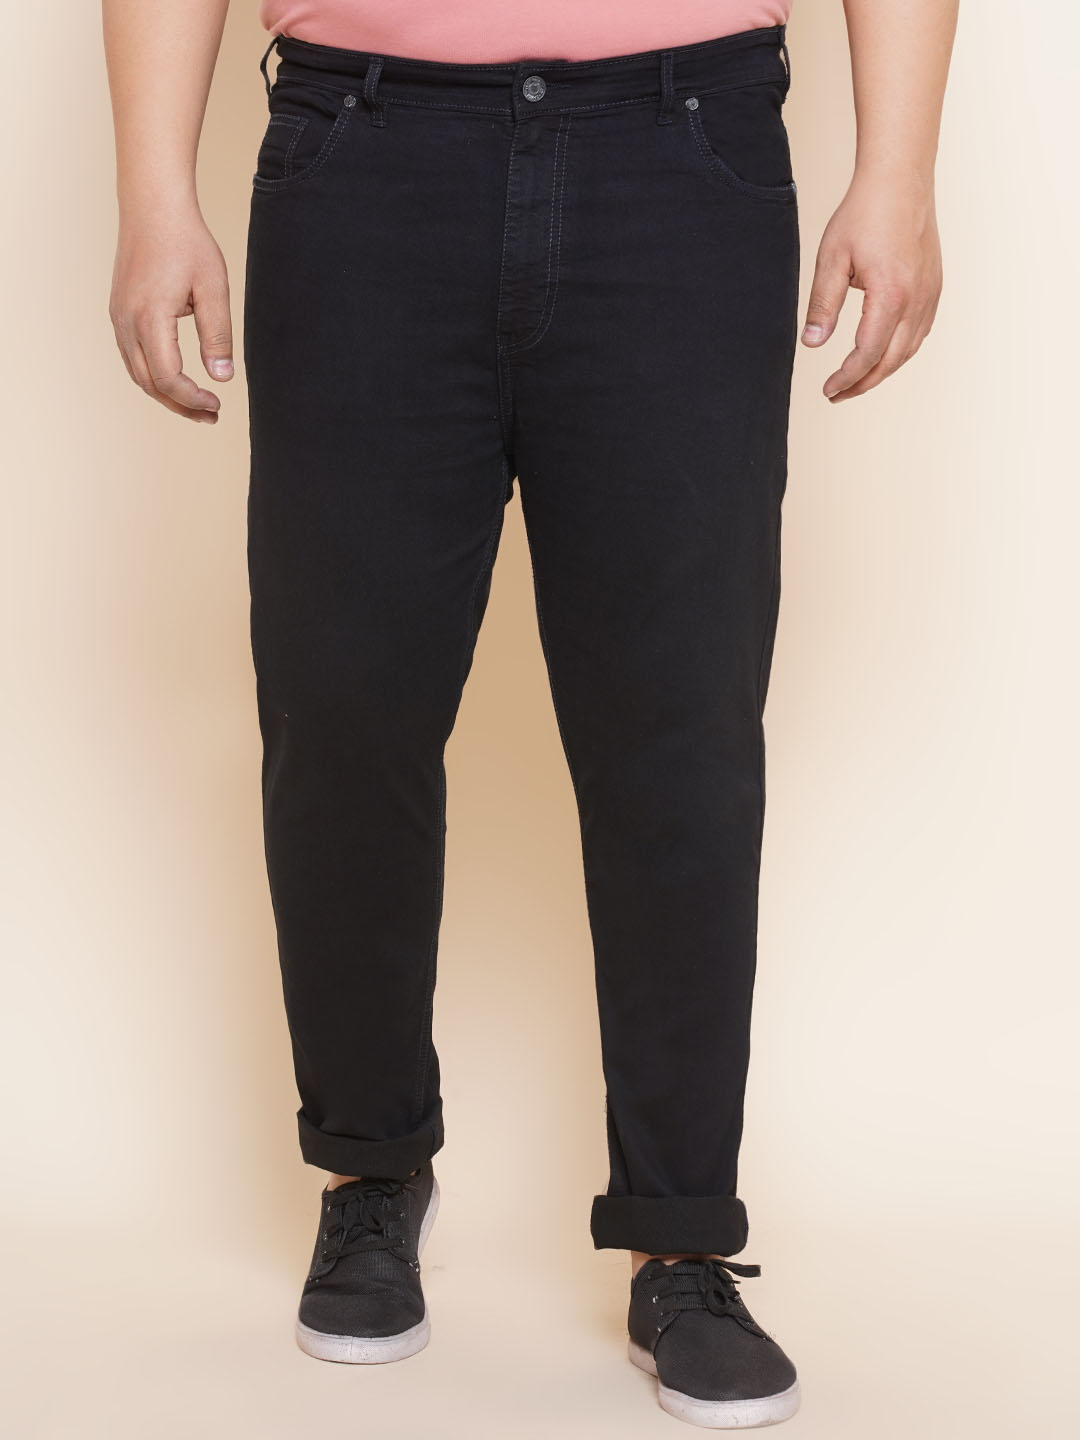 bottomwear/jeans/EJPJ25107/ejpj25107-1.jpg